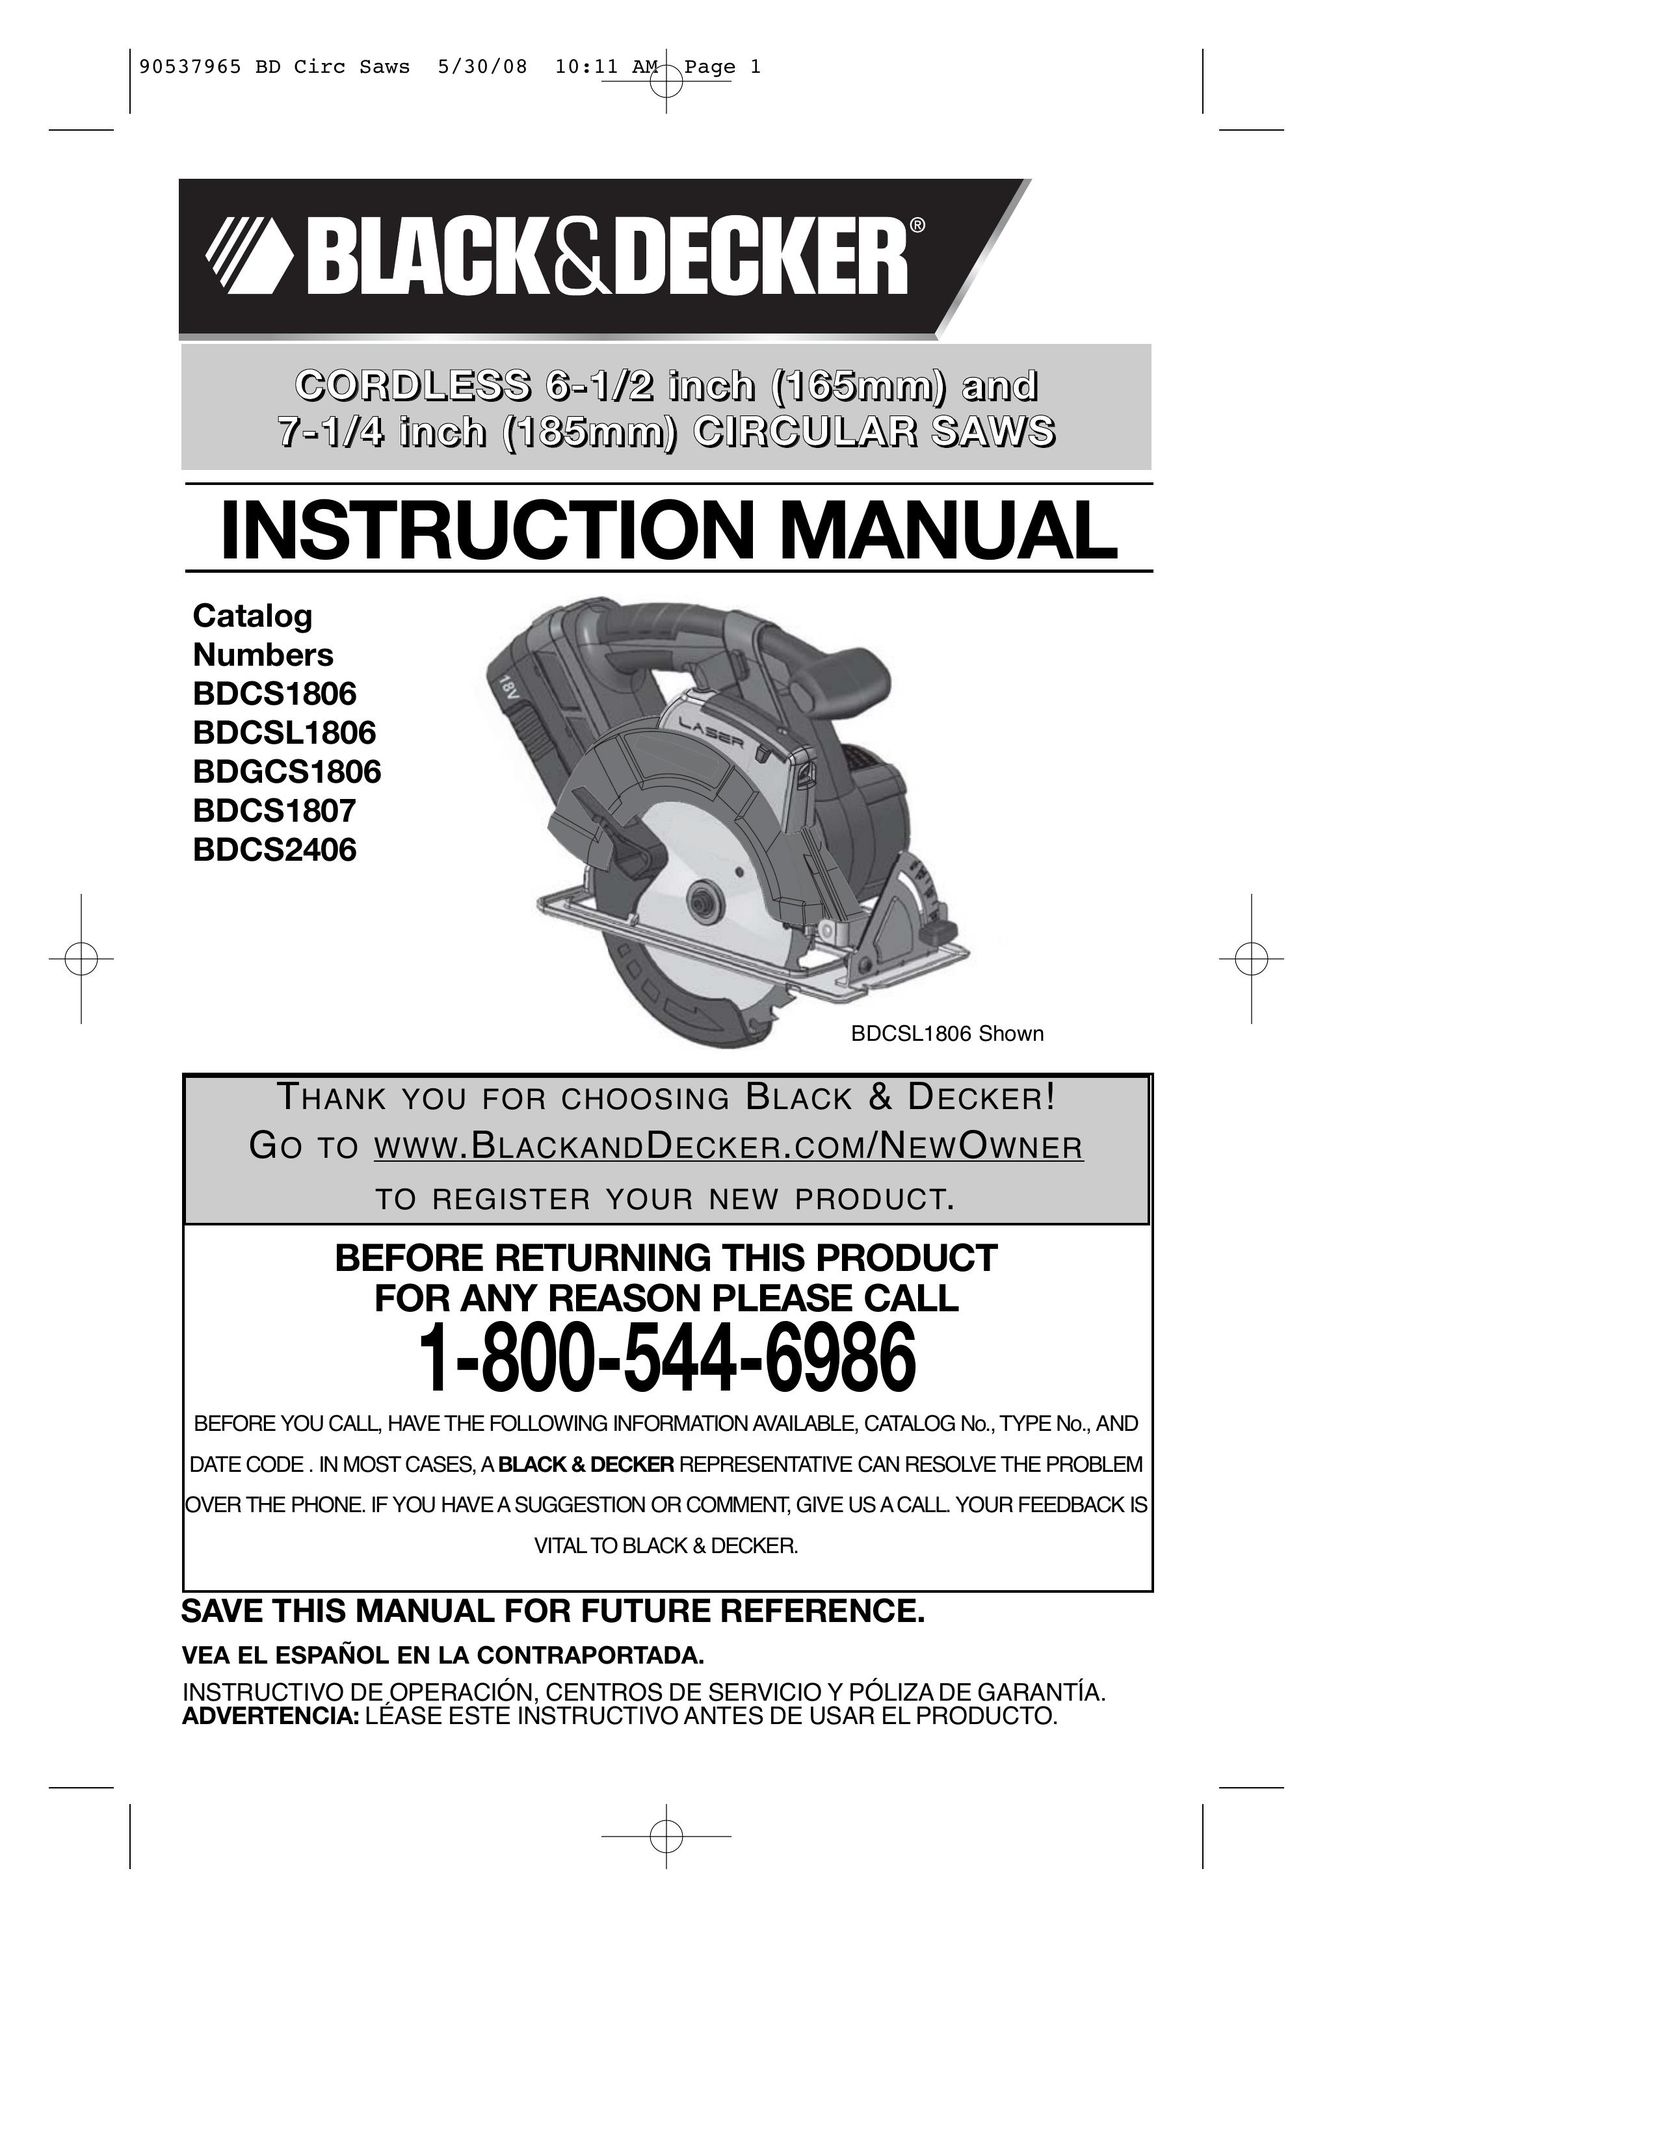 Black & Decker BDCS1806 Cordless Saw User Manual